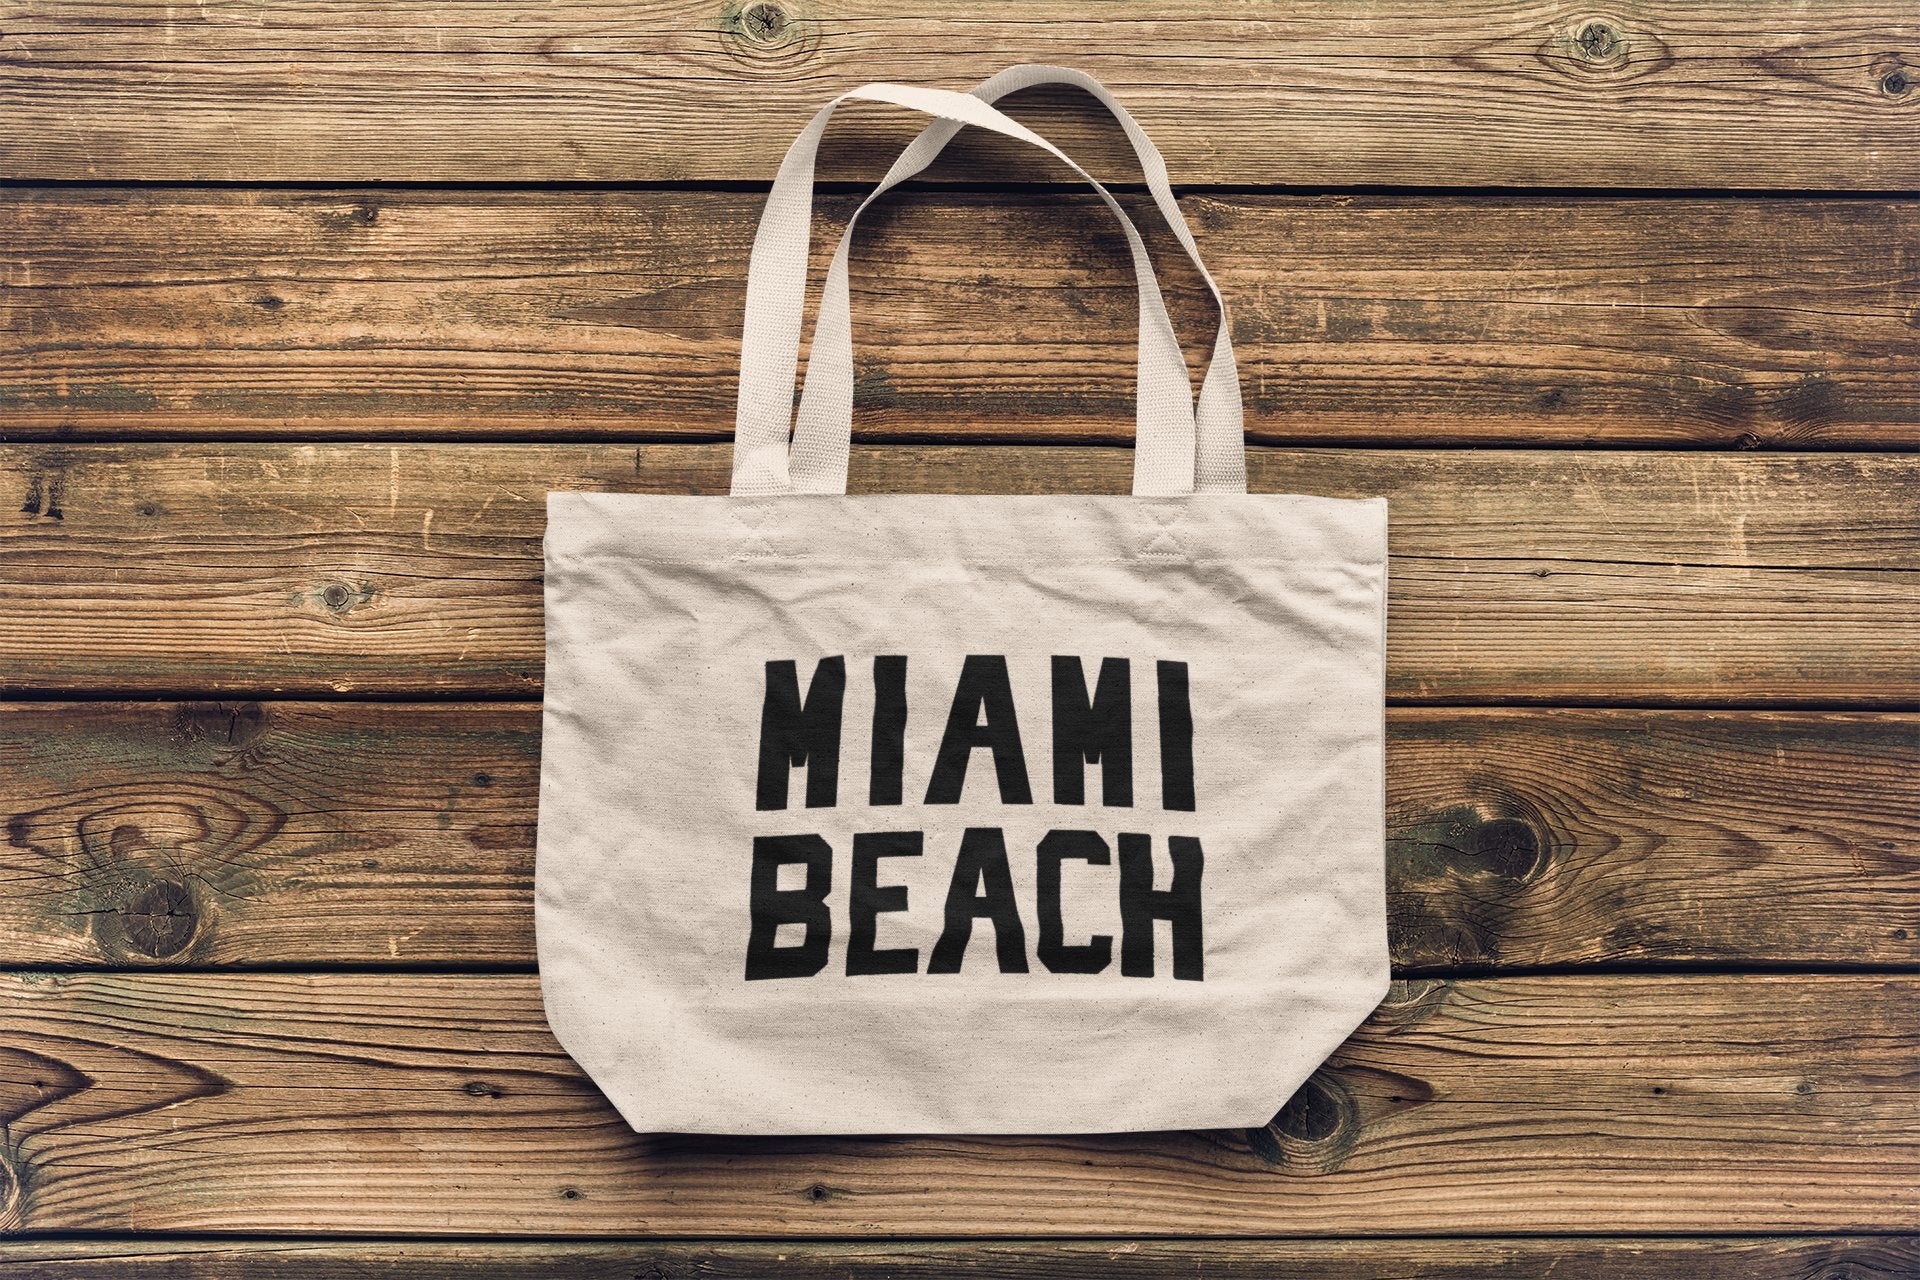 Miami Beach - Jumbo Size Vintage Style Retro City Cotton Canvas Tote Bags